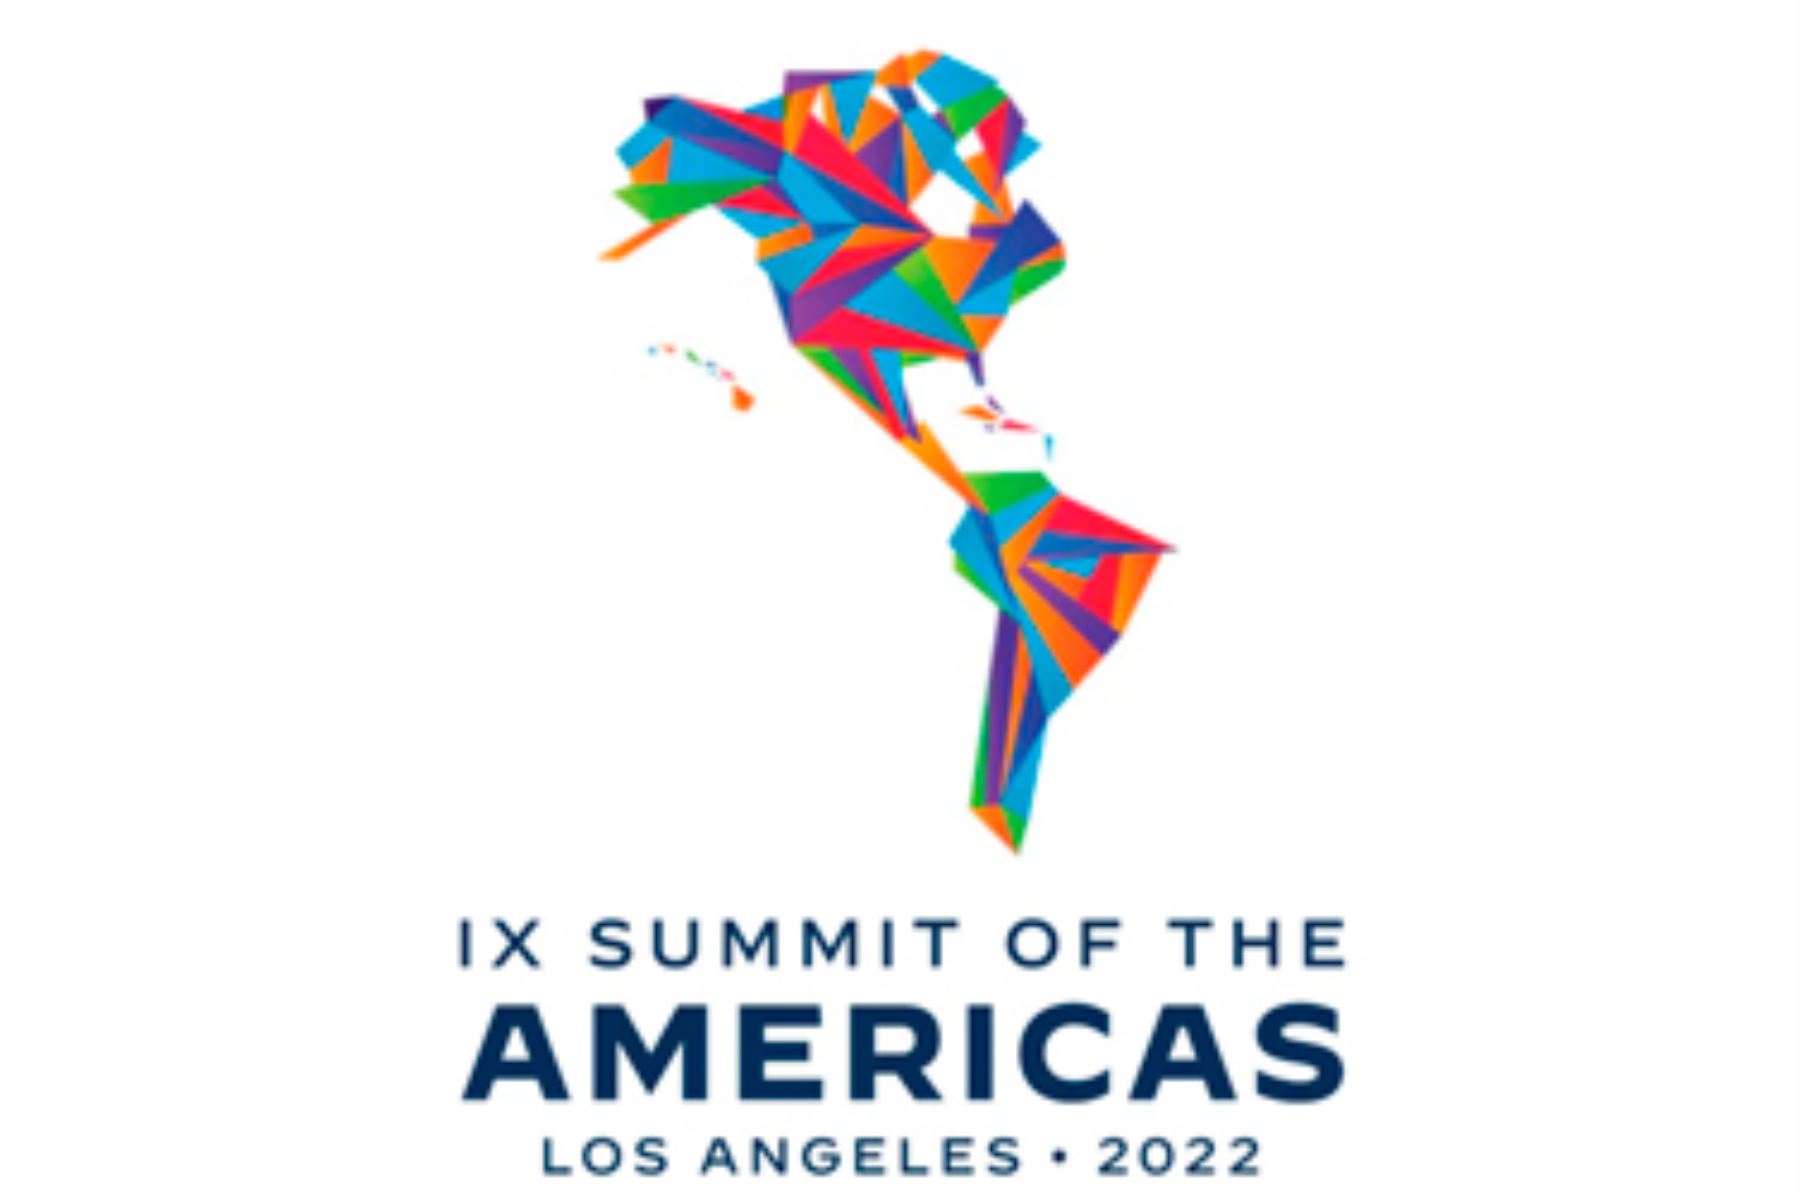 La IX Cumbre de las Américas será la segunda organizada por Estados Unidos después de la edición original en Miami en 1994. Foto: internet.